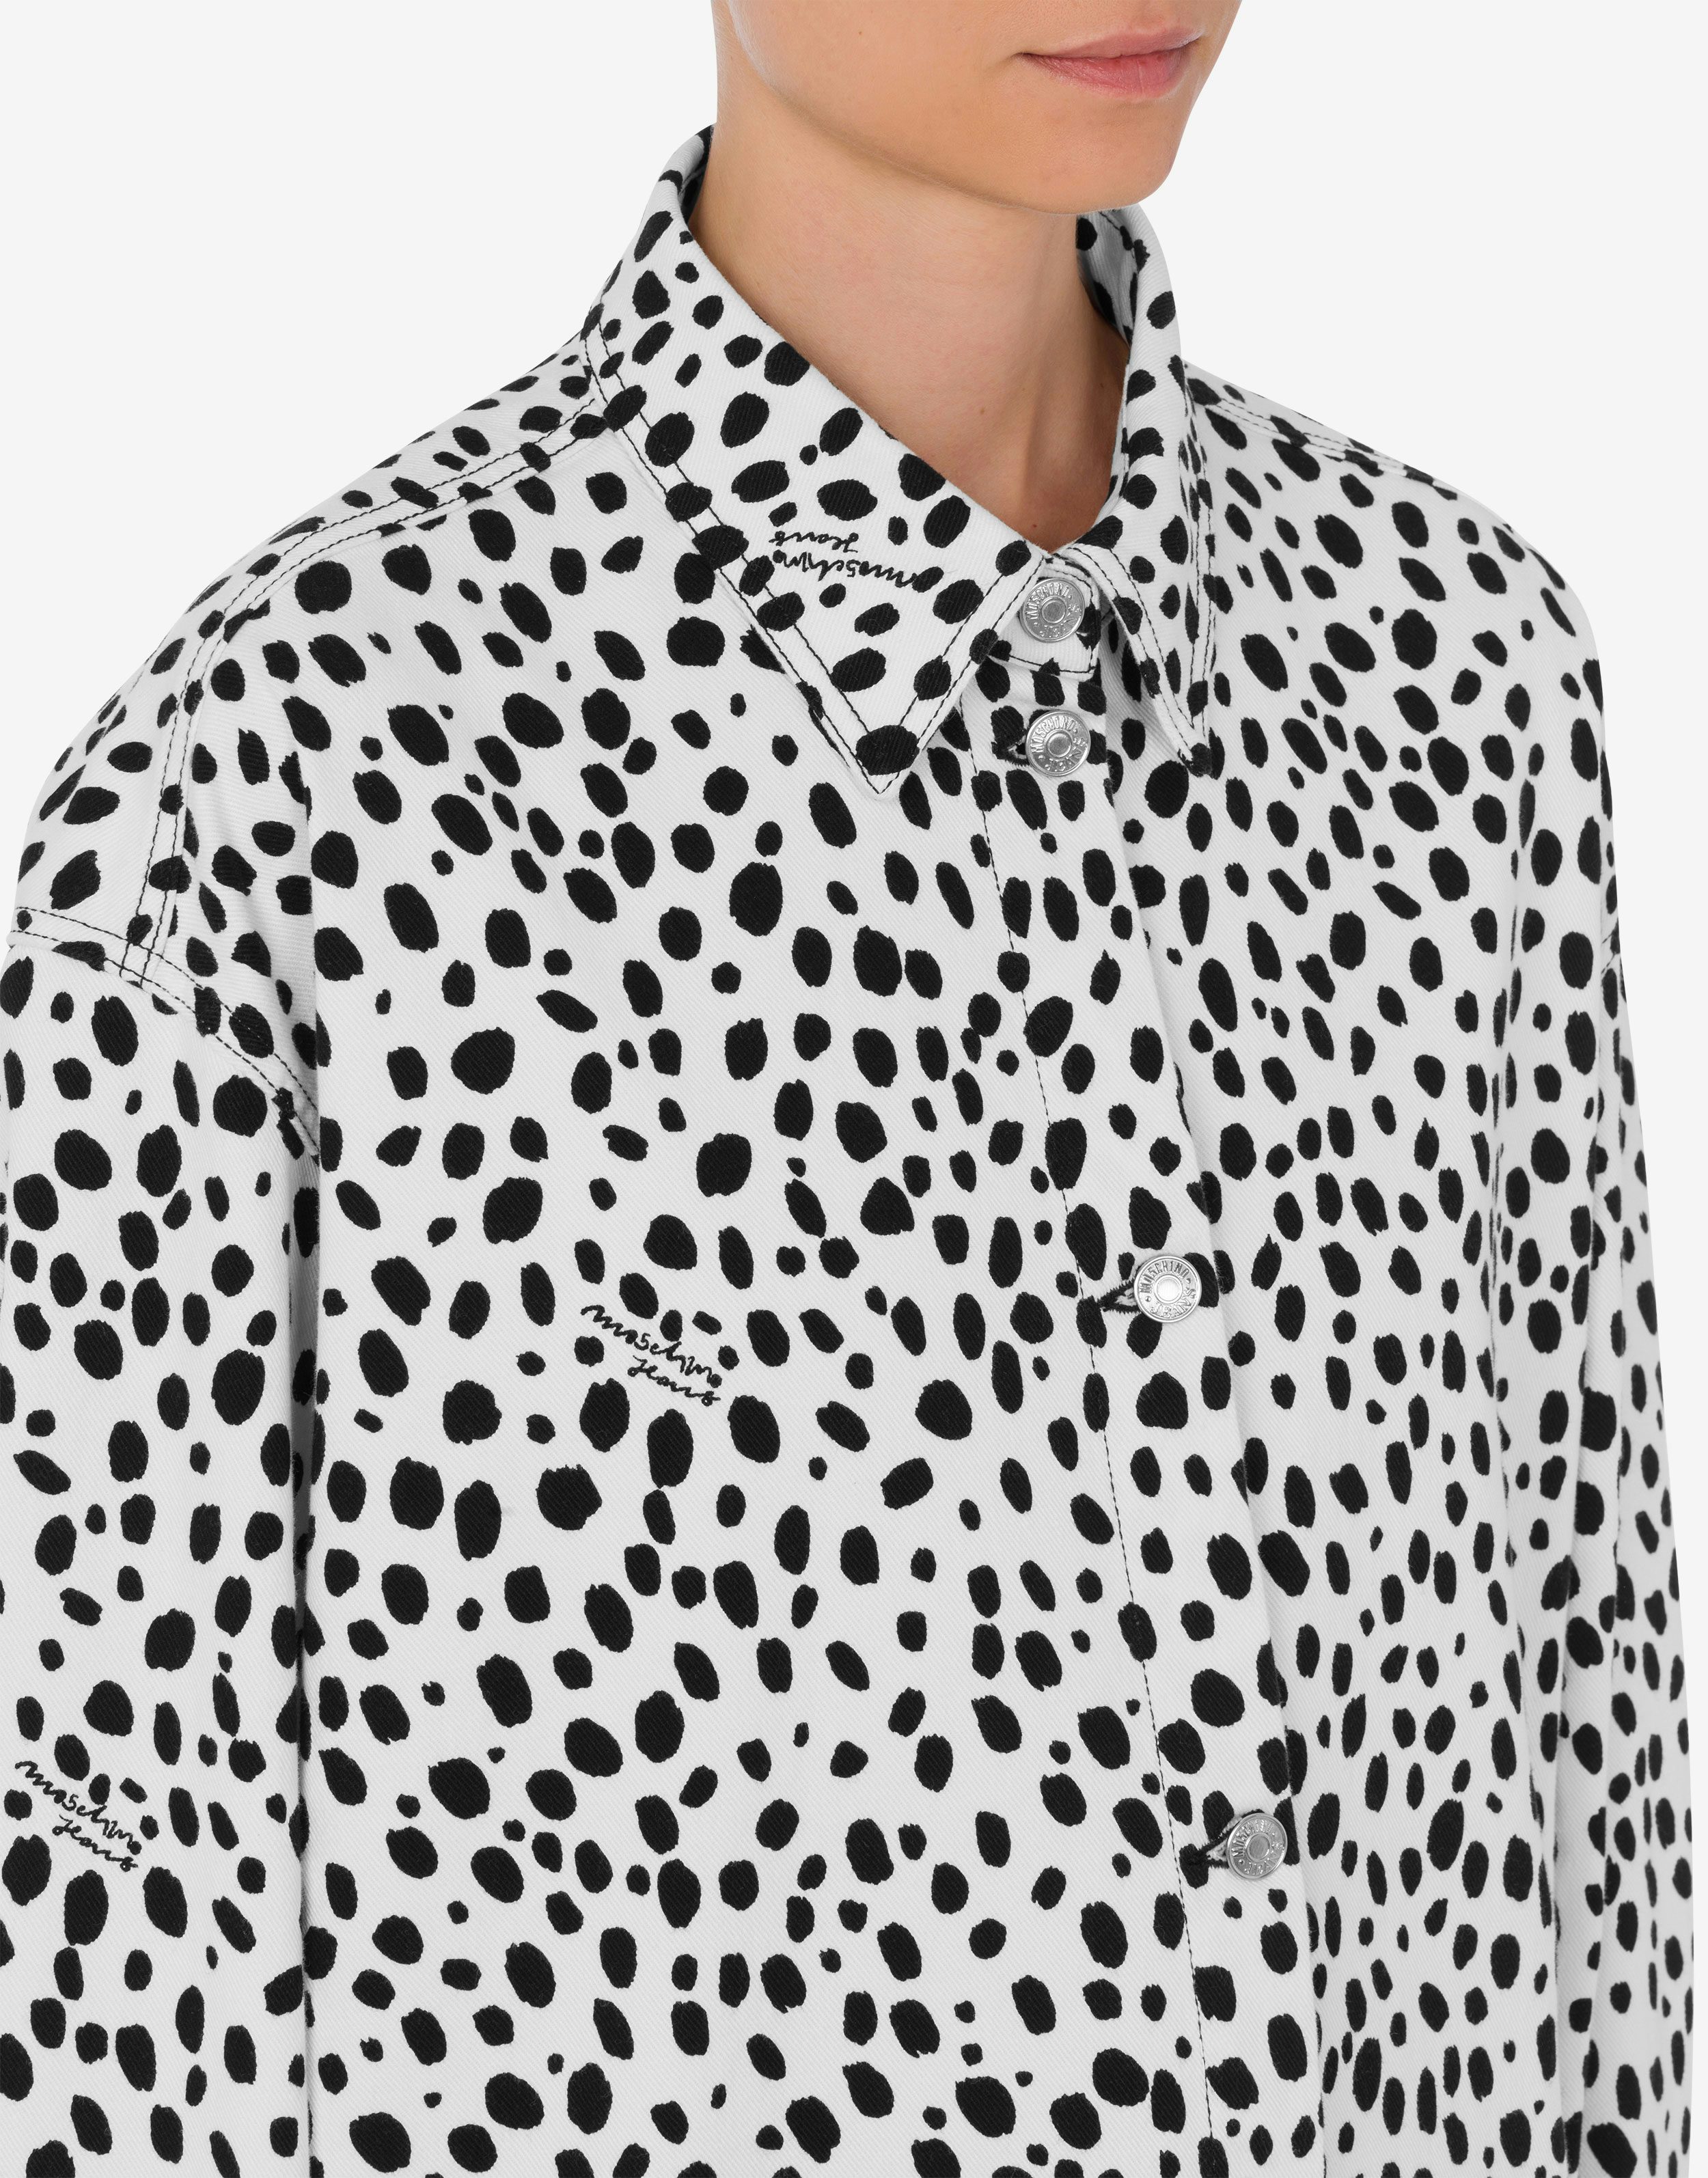 Shirt jacket Leopard Print 2